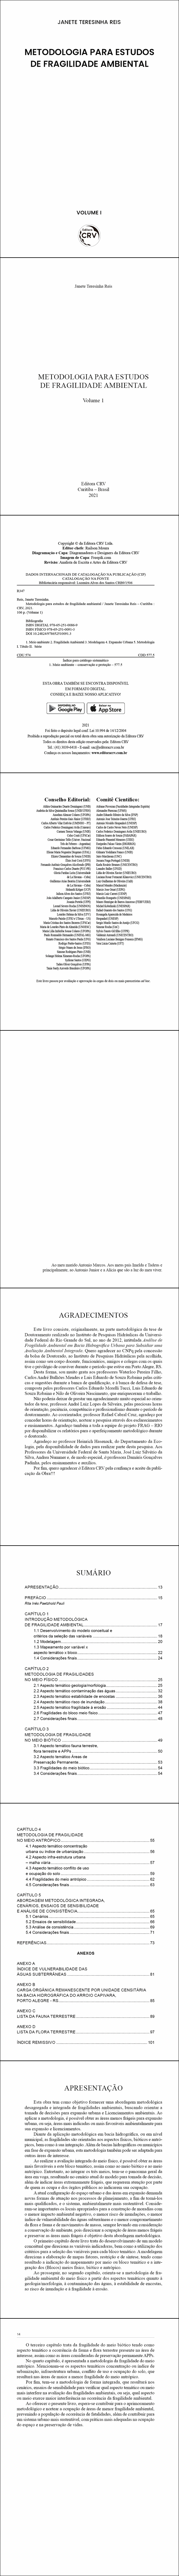 METODOLOGIA PARA ESTUDOS DE FRAGILIDADE AMBIENTAL <br>Volume 1